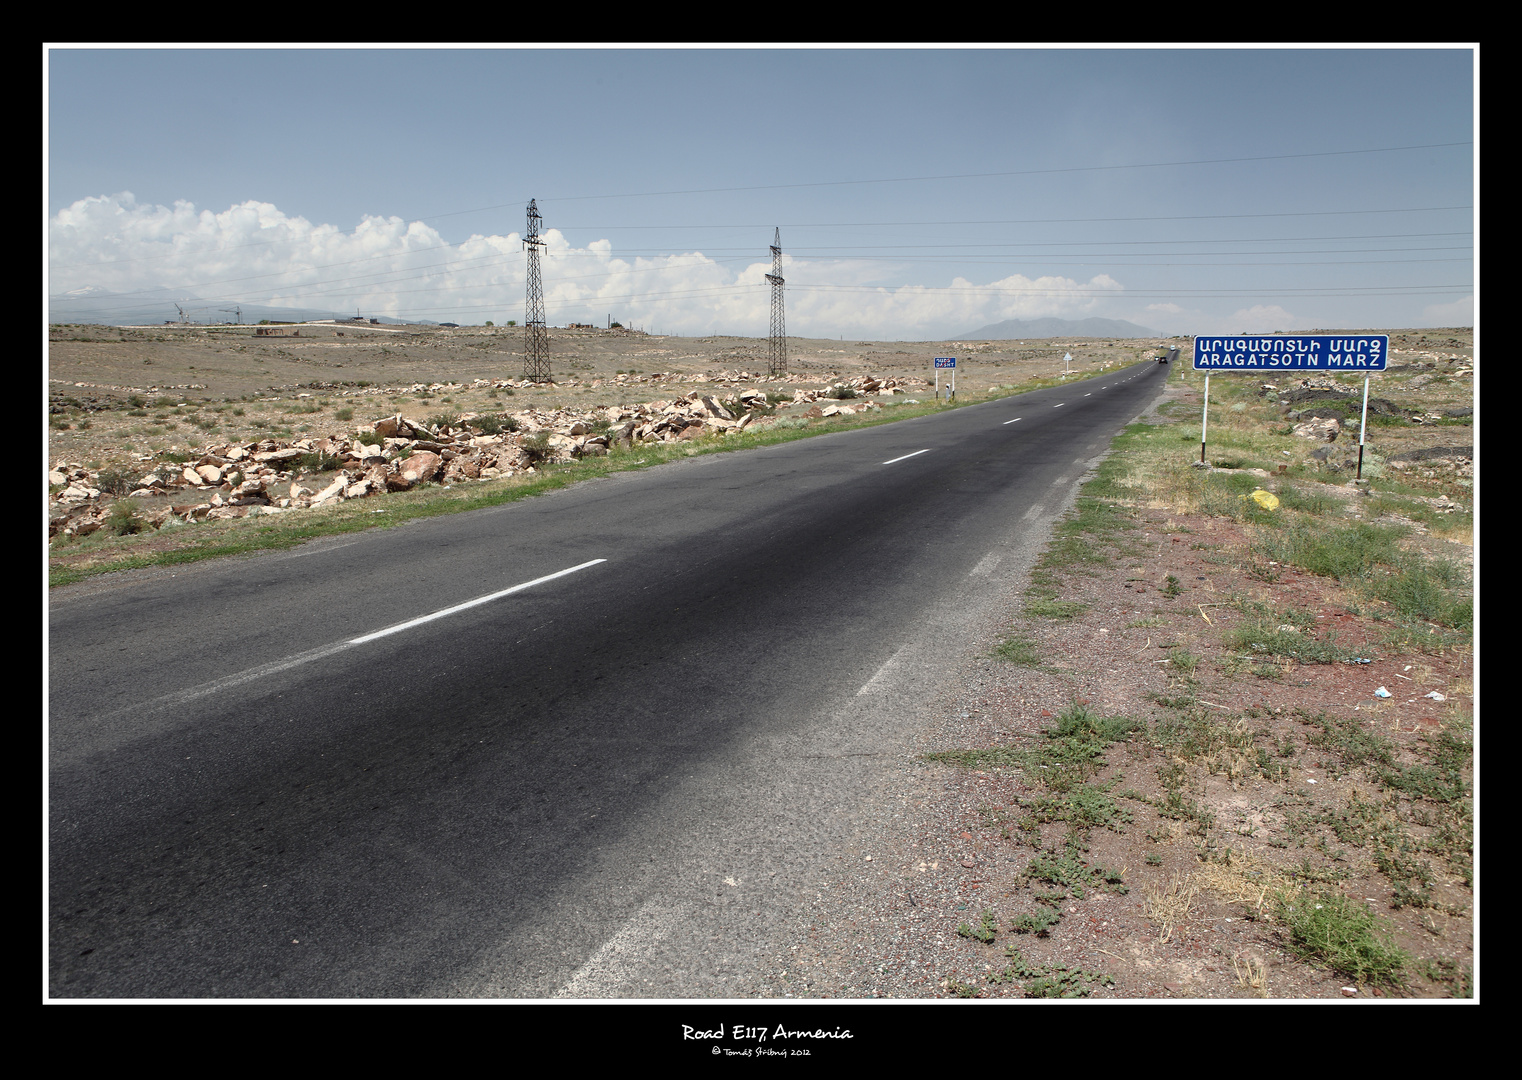 Road No: E117 in Armenia, dead landscape